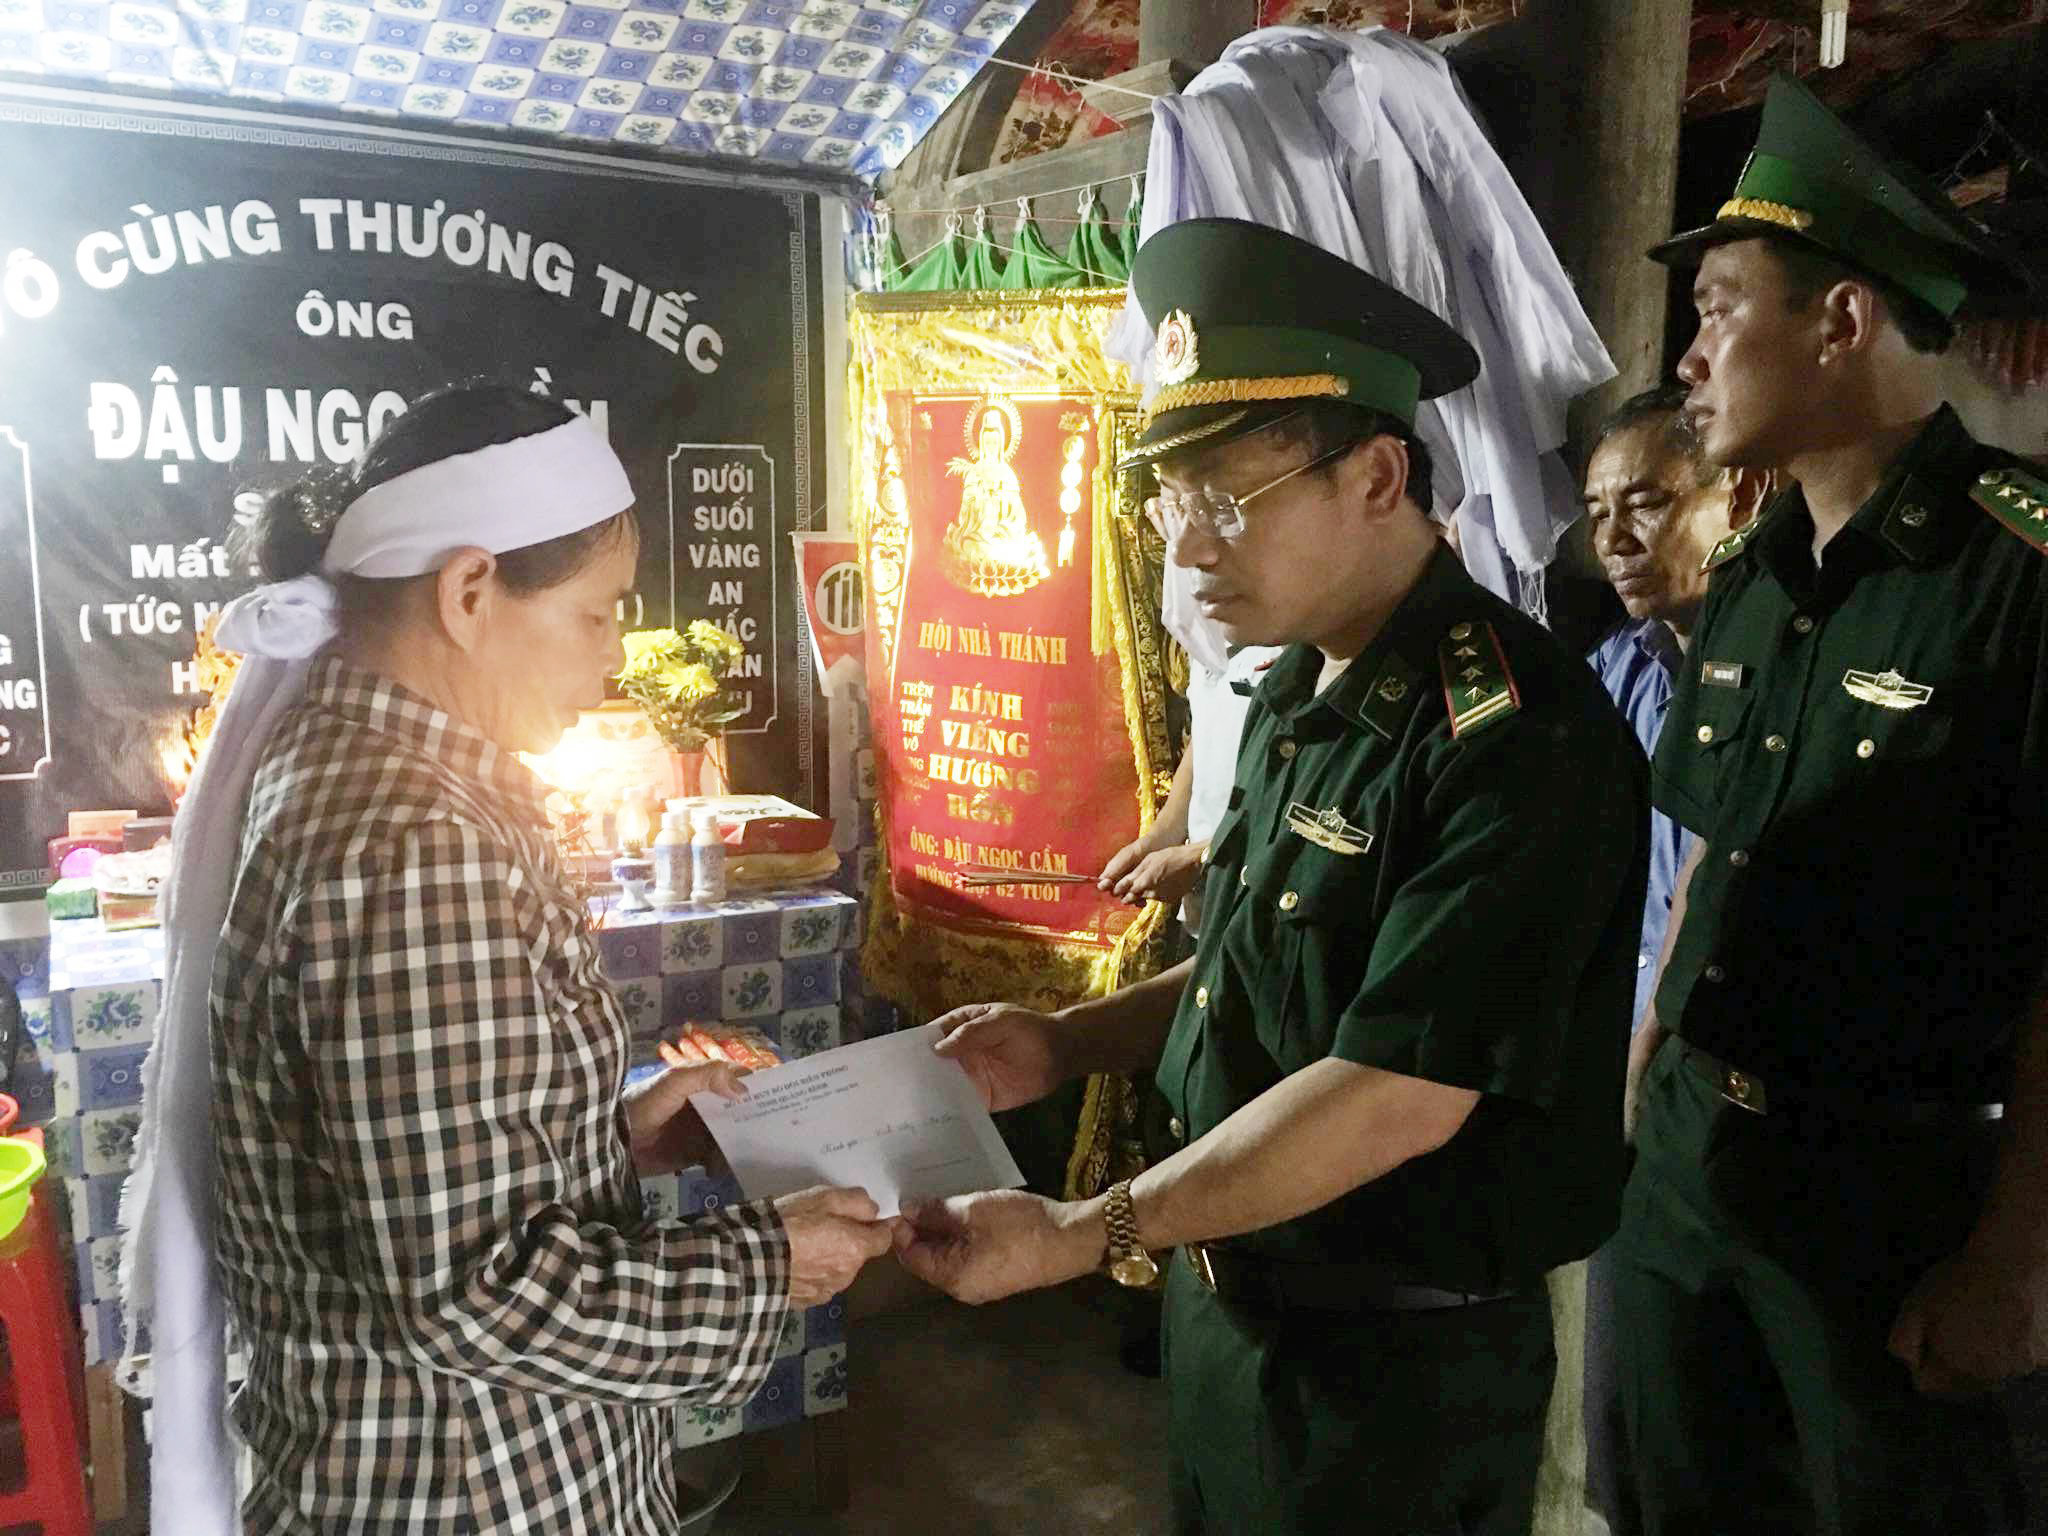 Đoàn Quảng Bình thăm hỏi, hỗ trợ 5 triệu đồng cho thân nhân thuyền viên Đậu Ngọc Cầm đang mất tích